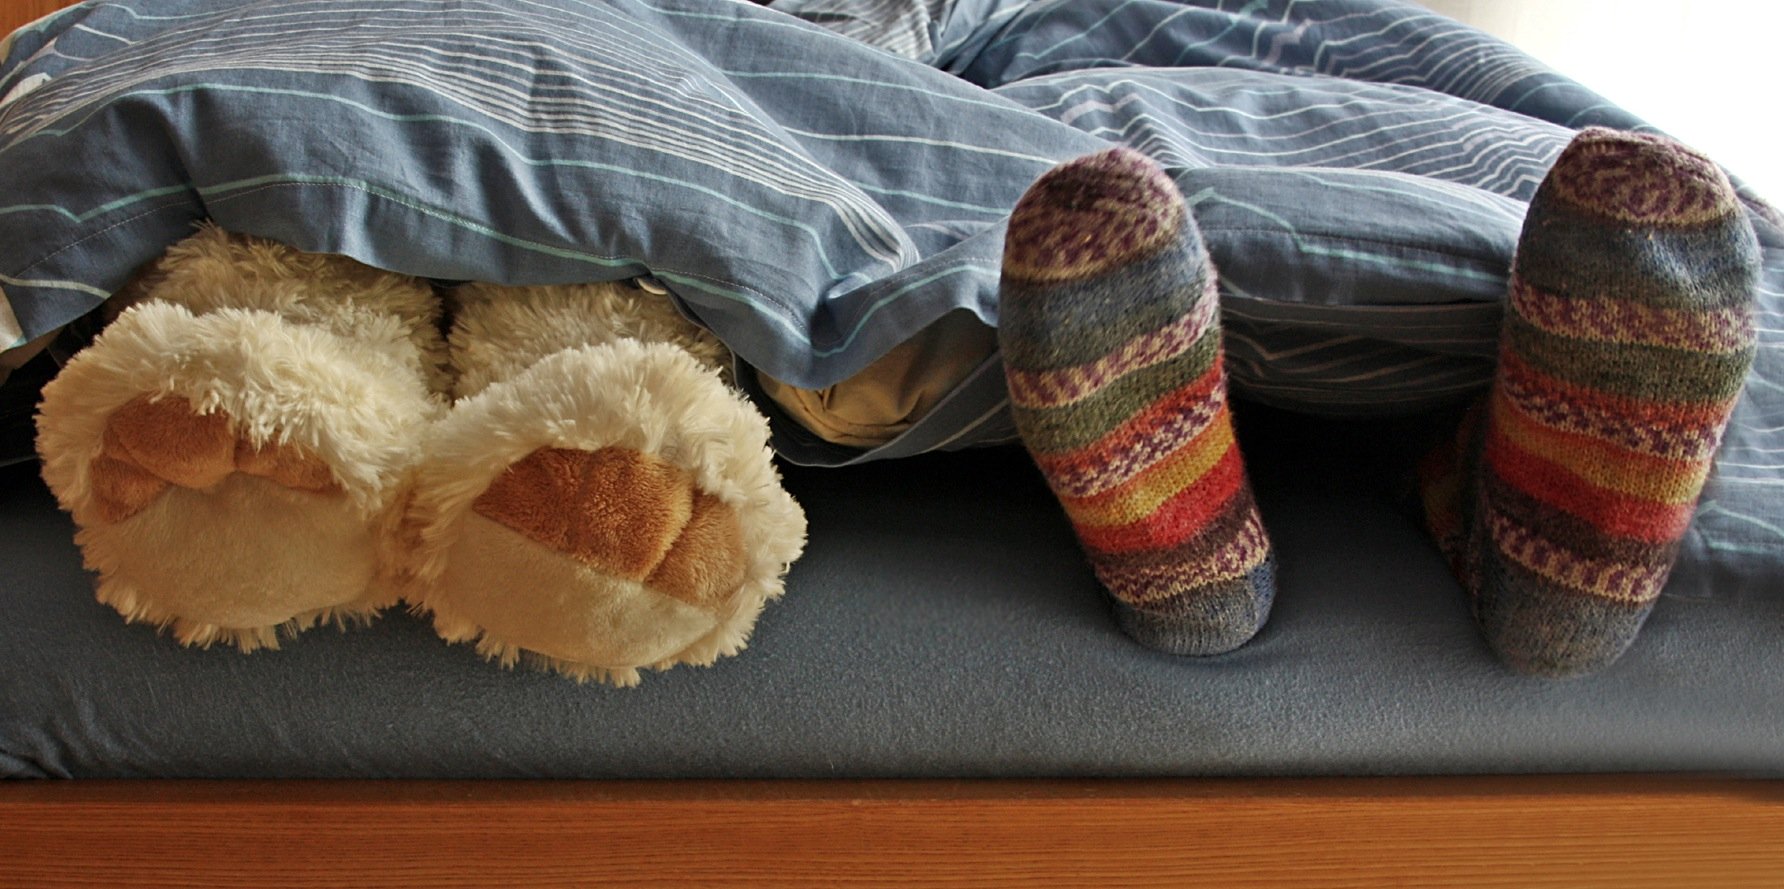 Füße einer Person und eines Teddybärs, die unter einer Decke hervorlugen